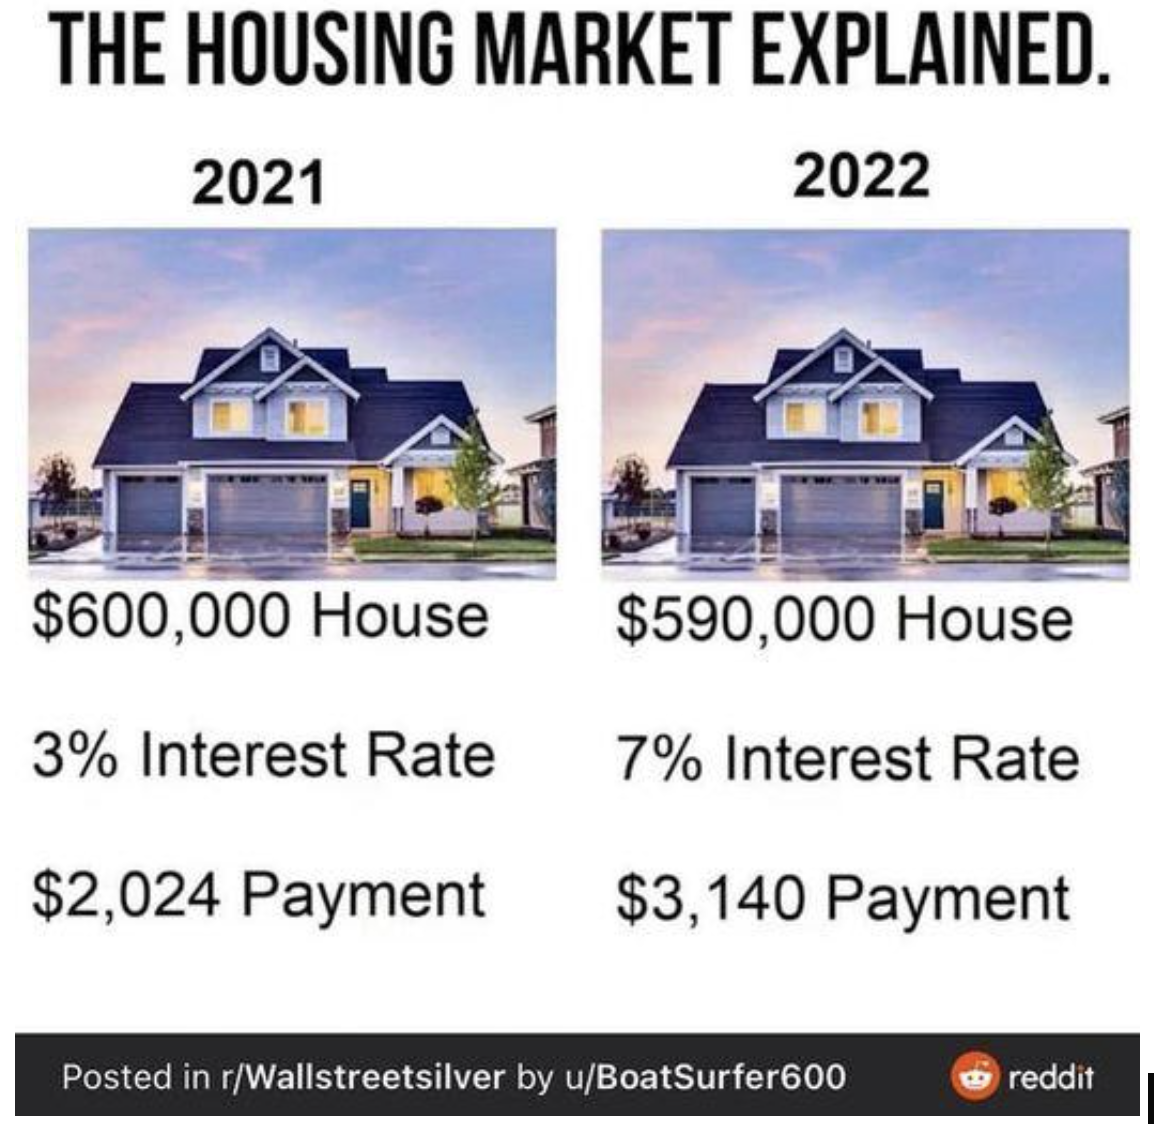 Meme לגבי עלות הדיור בשנים 2021-2022